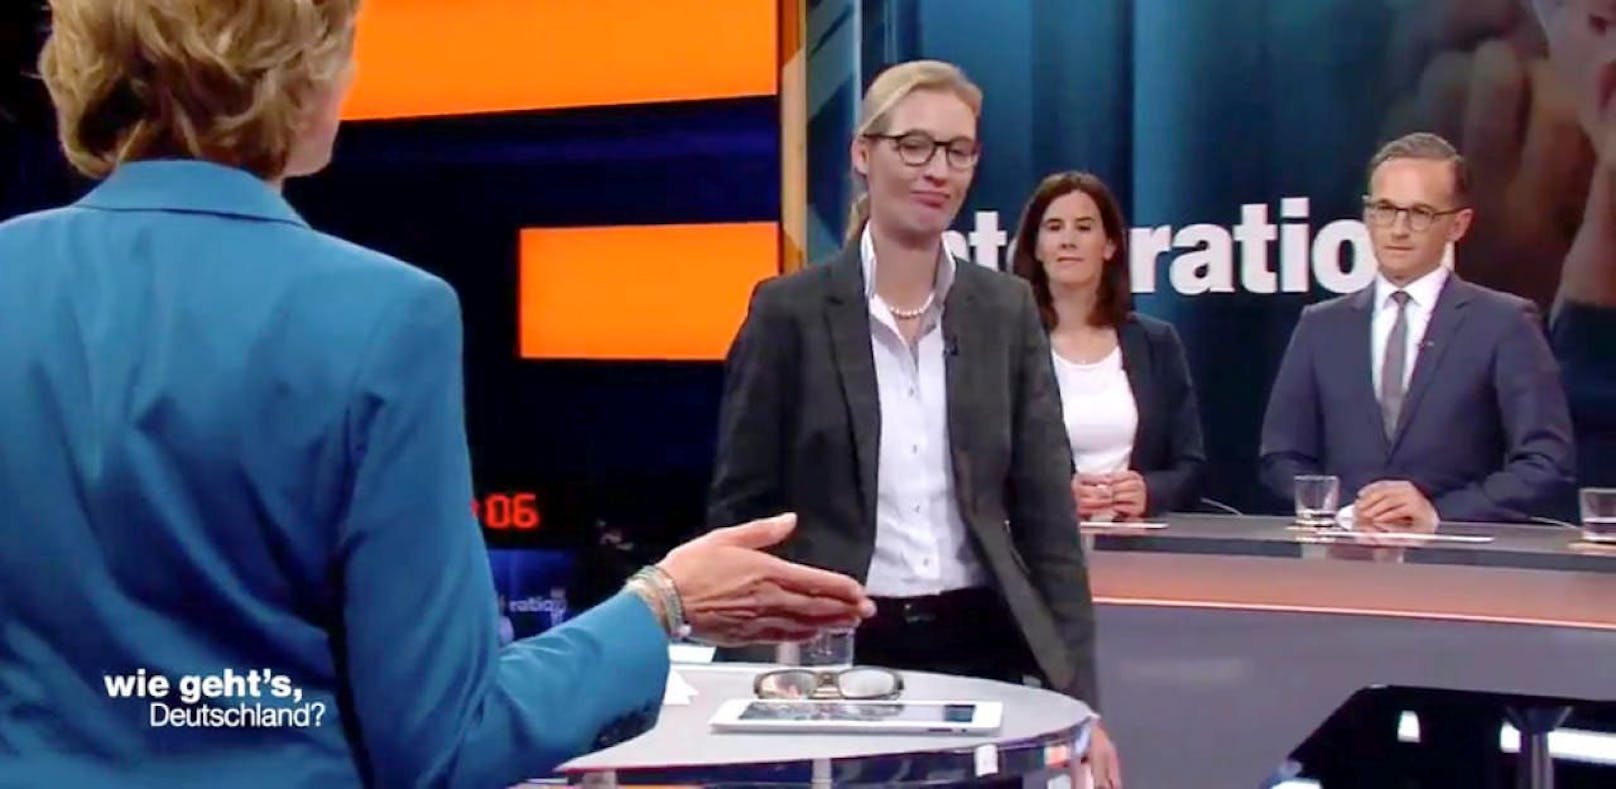 AfD-Kandidatin Weidel sorgt im TV für einen Eklat